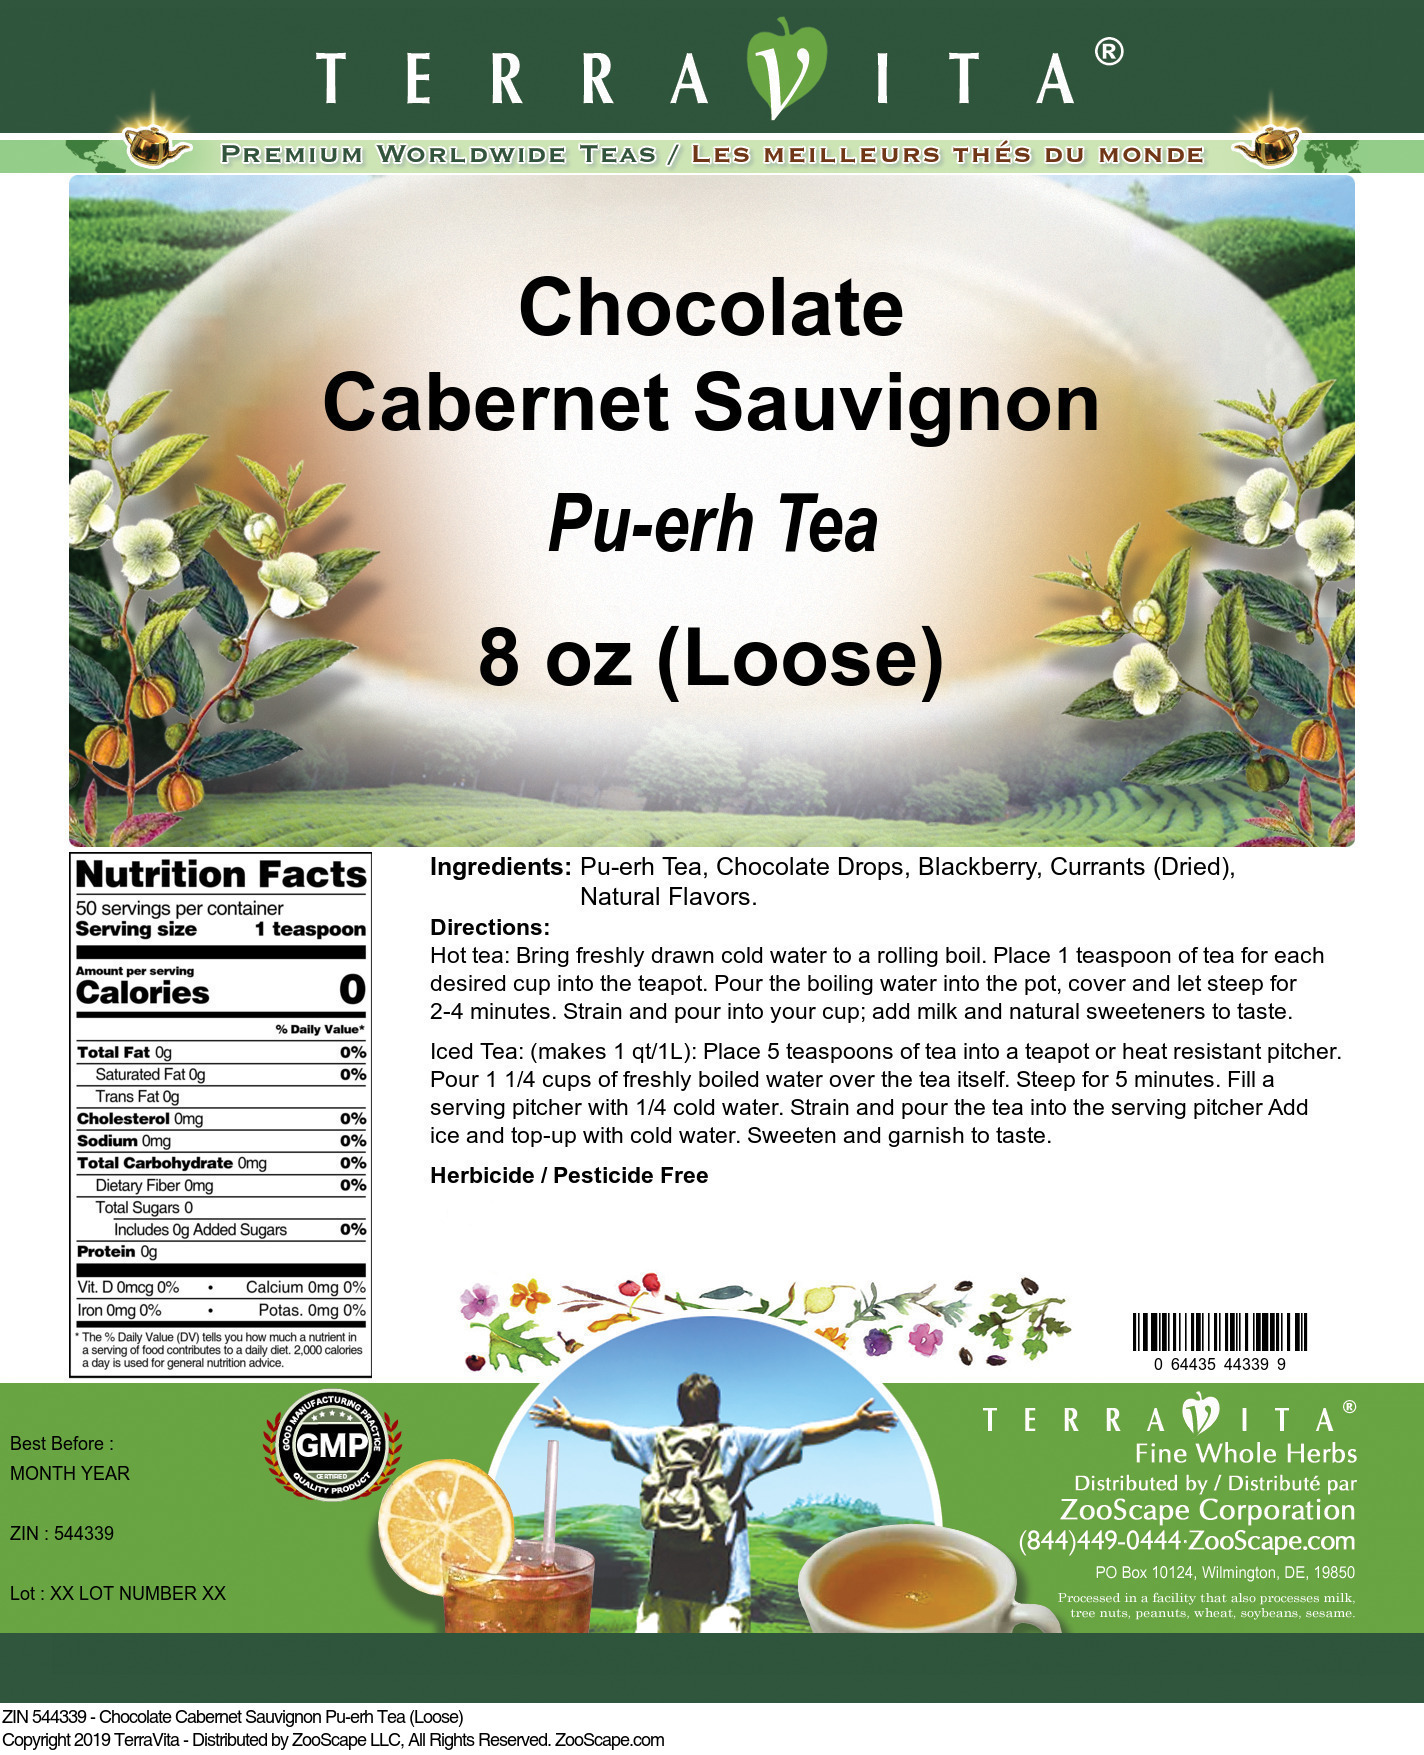 Chocolate Cabernet Sauvignon Pu-erh Tea (Loose) - Label